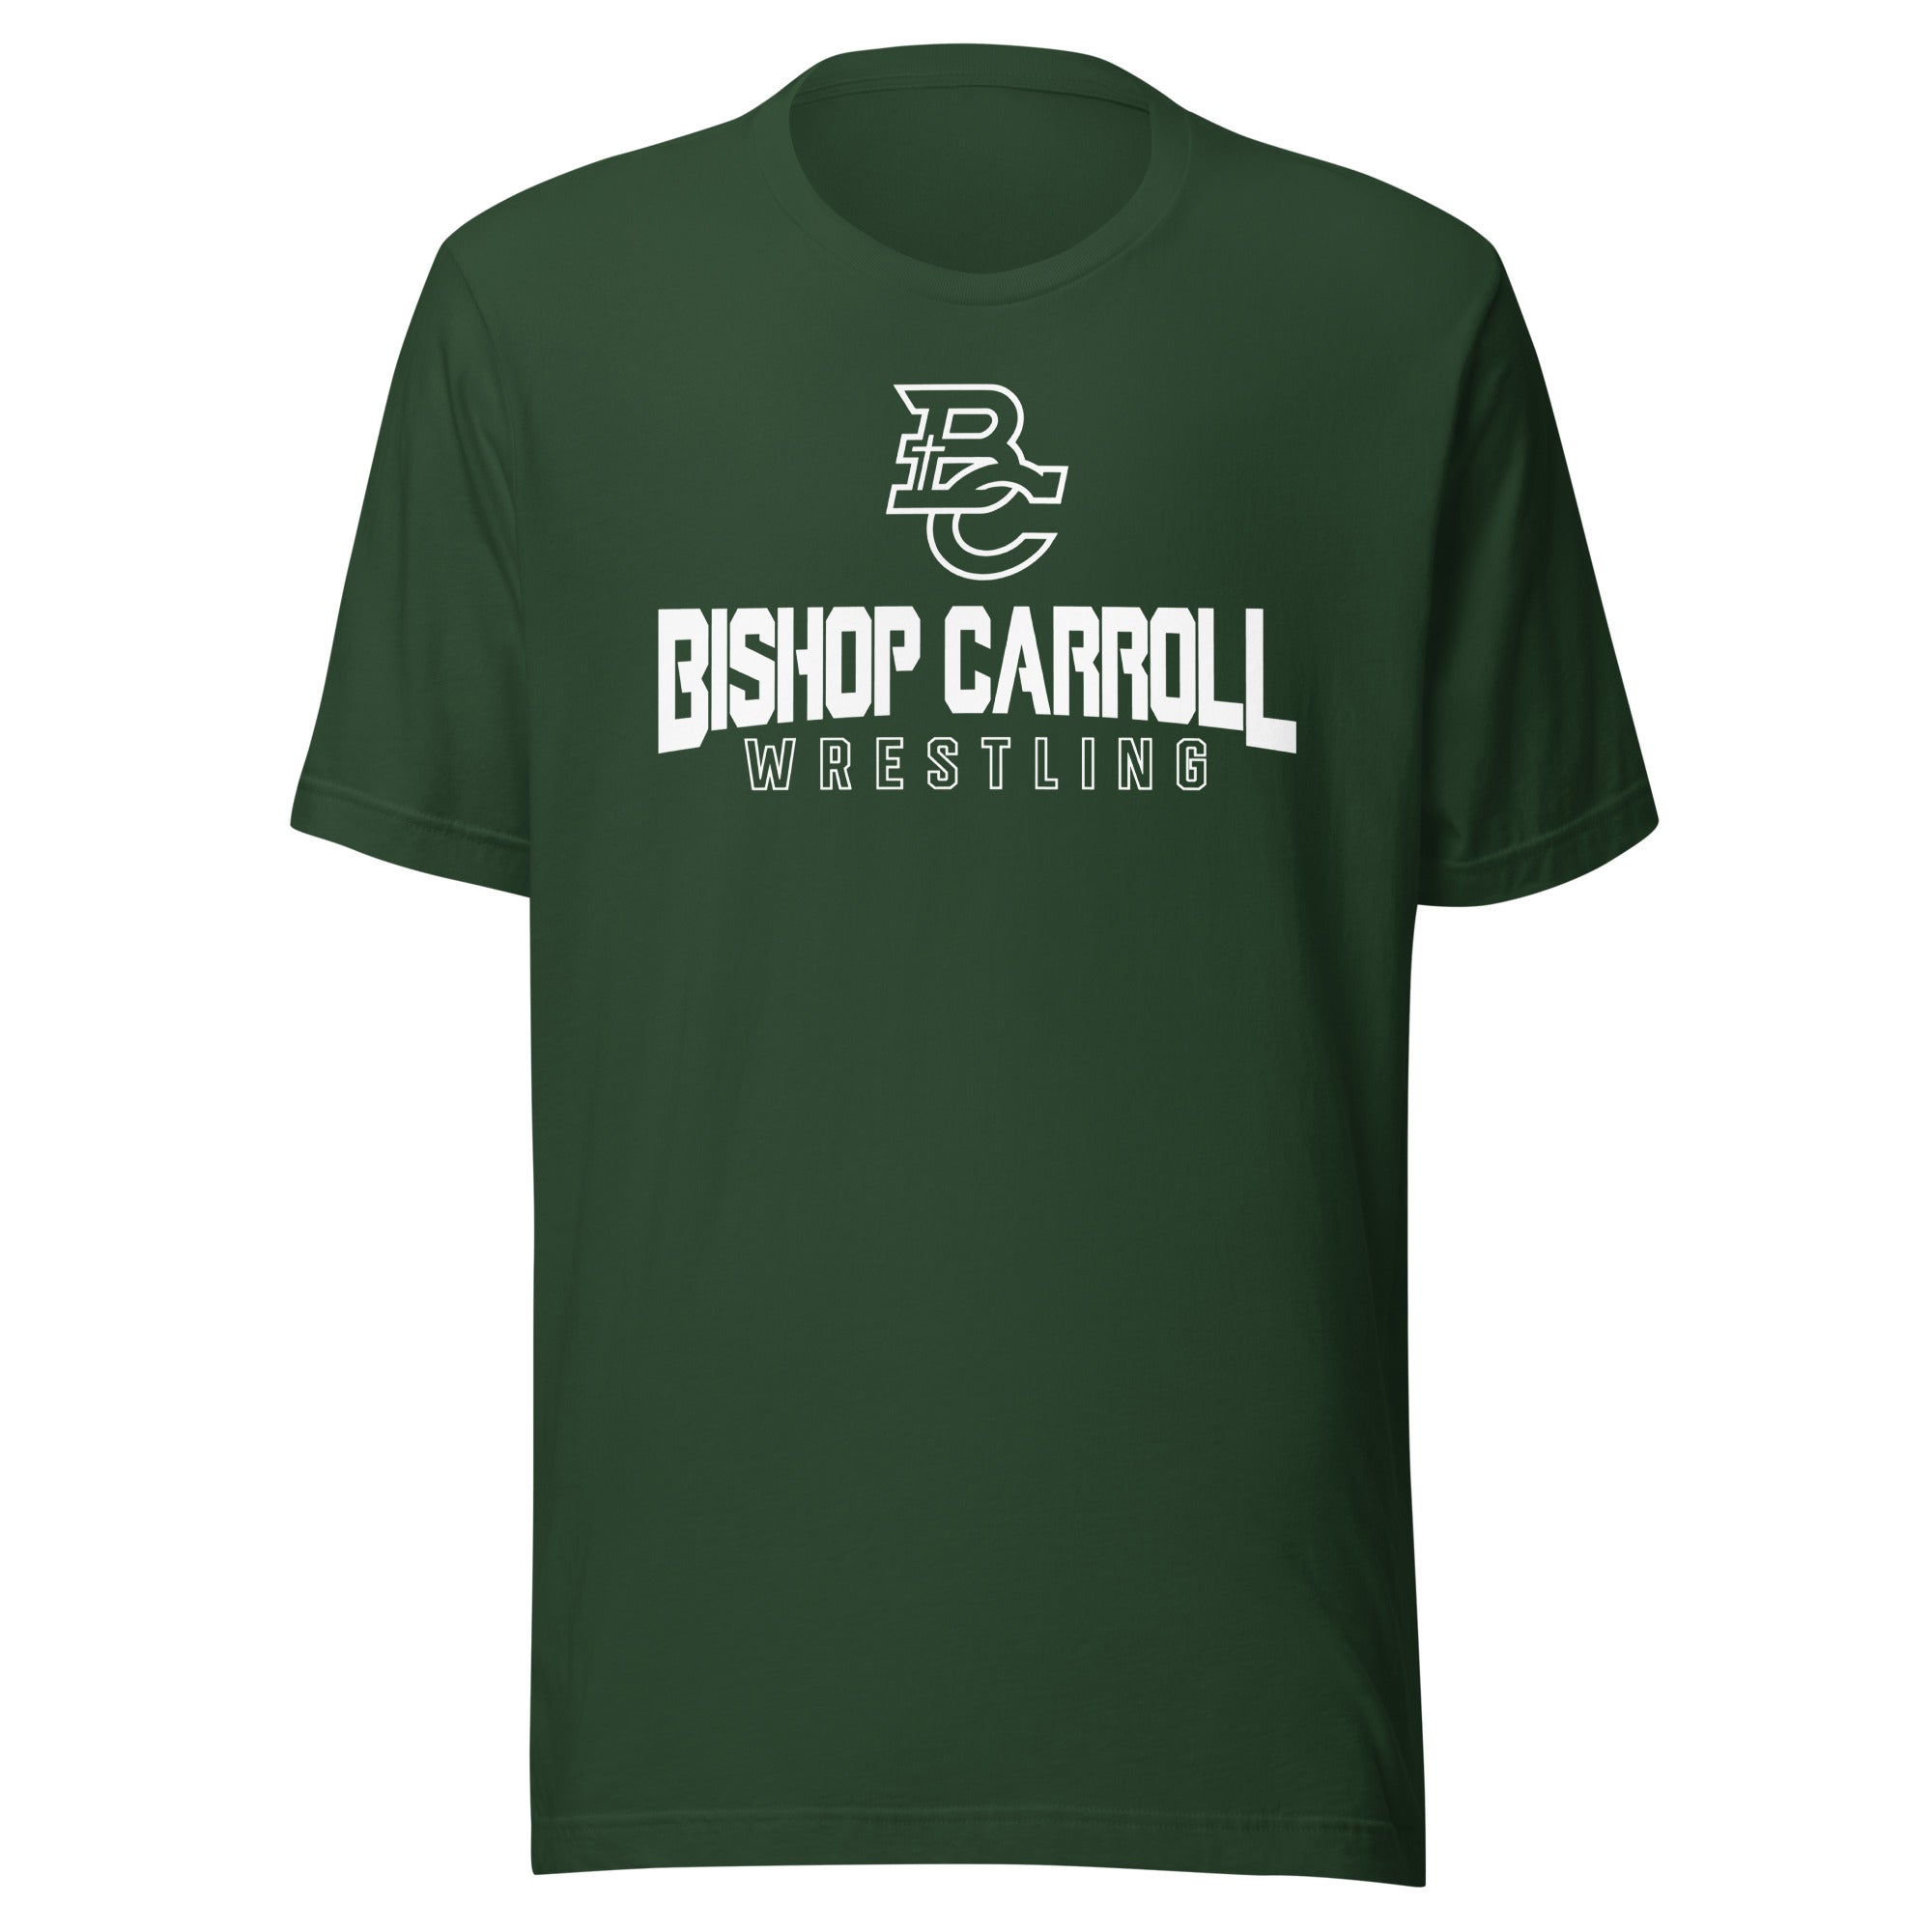 Bishop Carroll Wrestling (with back design) Unisex t-shirt